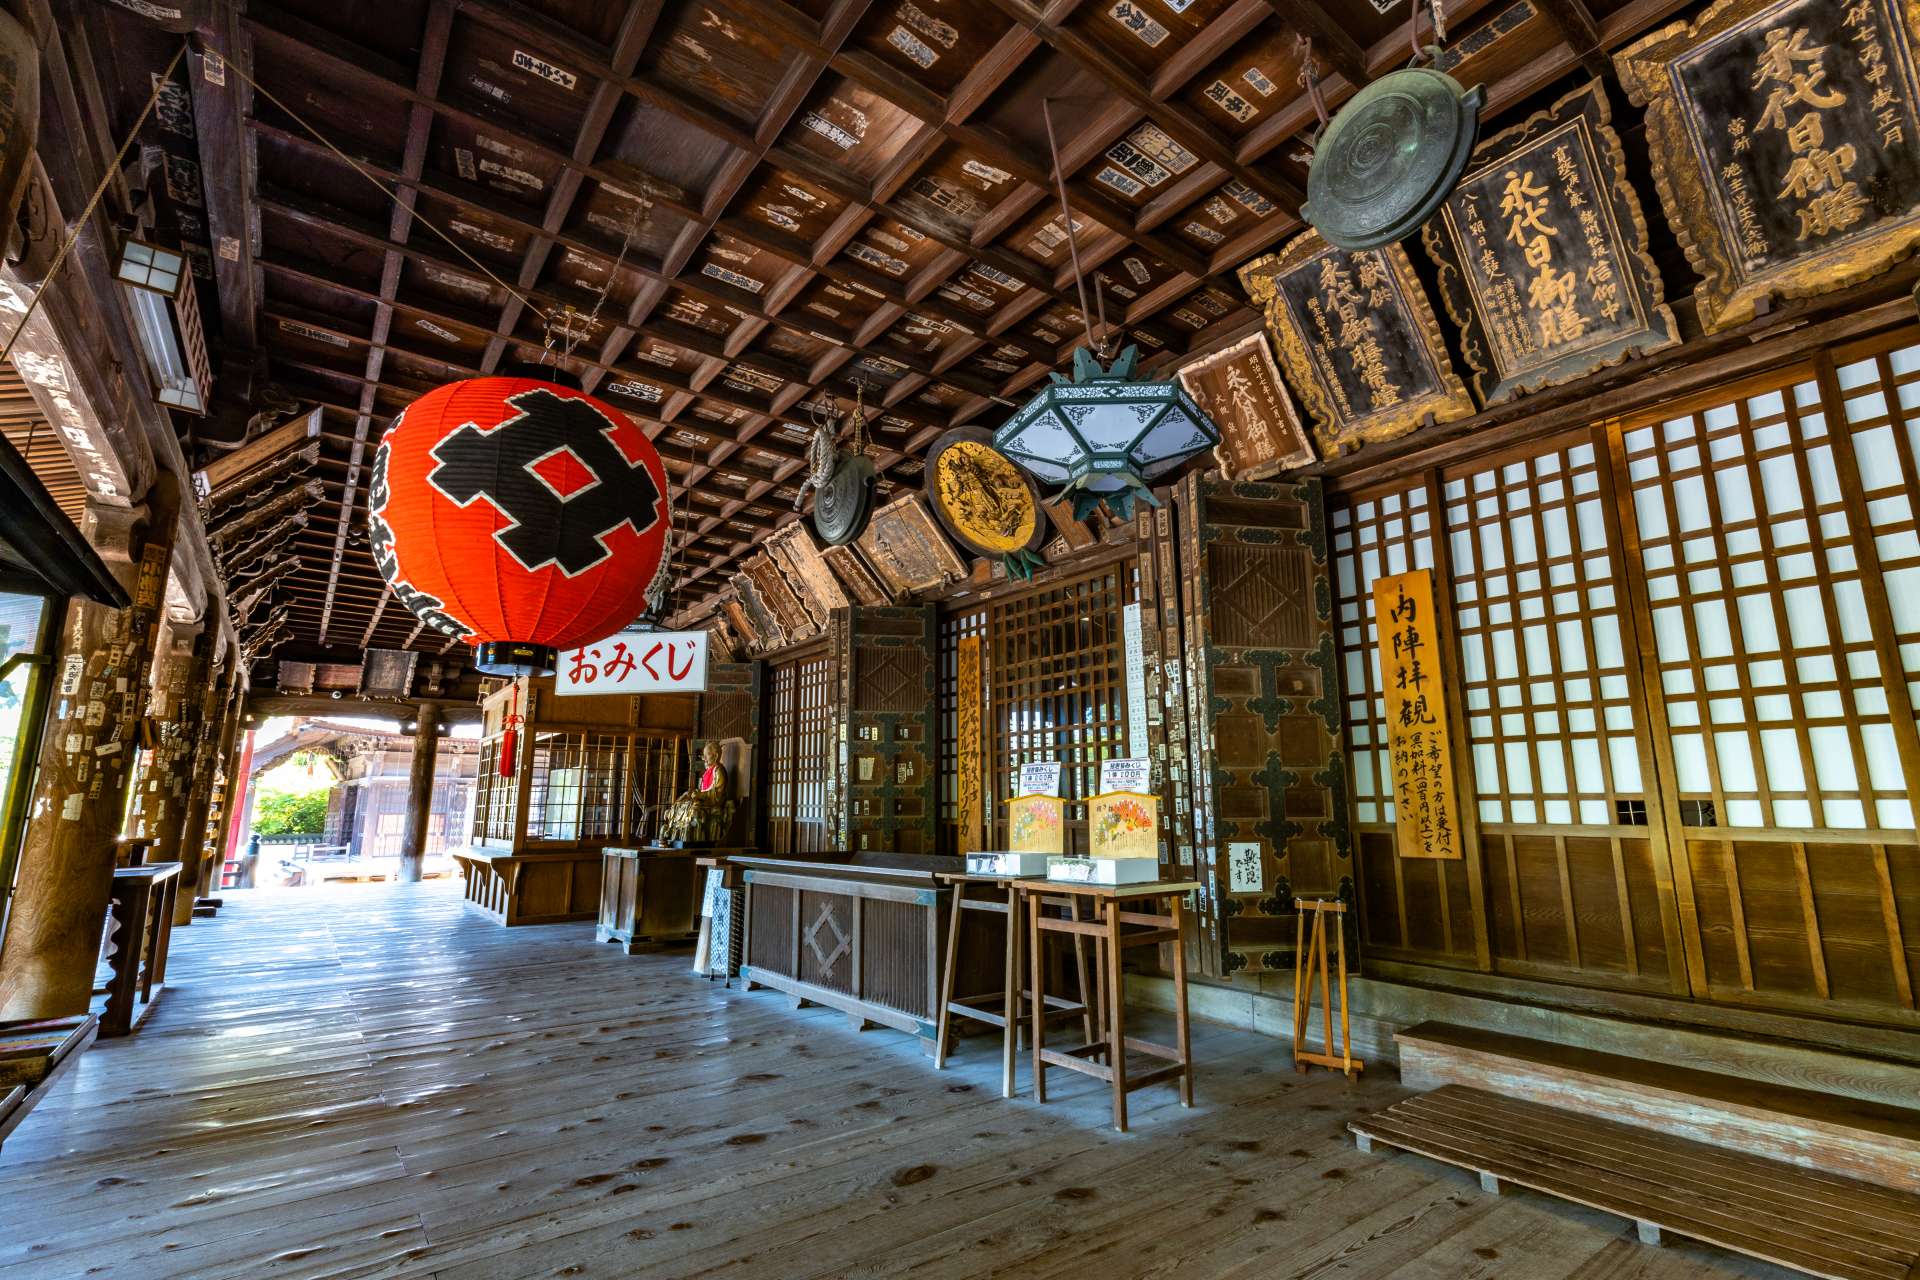 Le hall principal est le plus grand de tous les temples le long du pèlerinage de Saikoku (Saigoku) 33 Kannon.